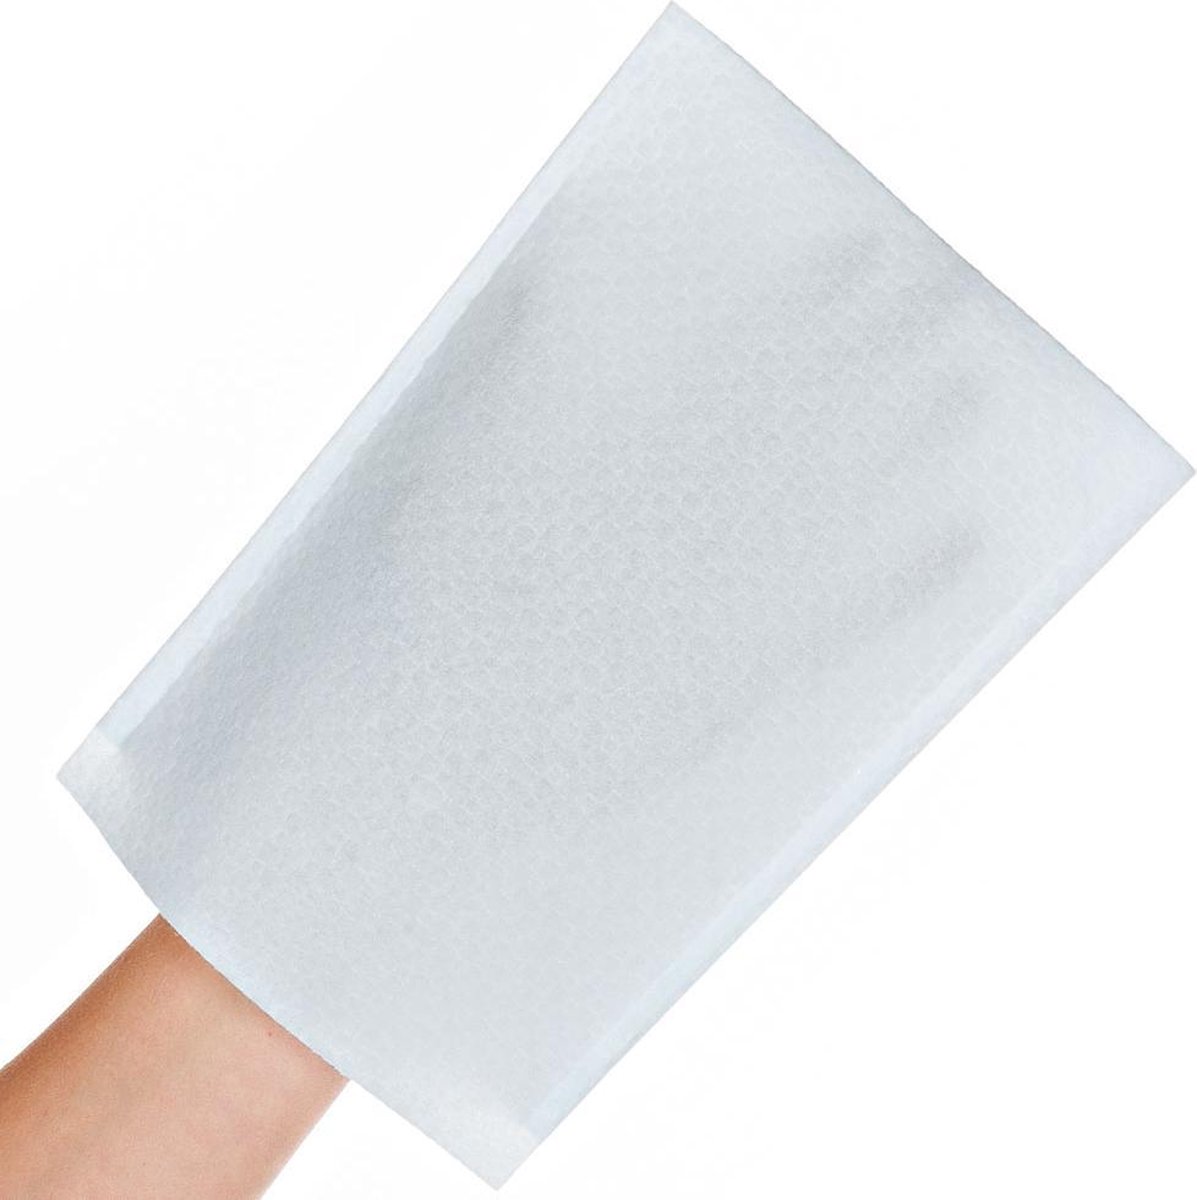 Wegwerp washandjes - wegwerpwashandjes - lichtblauw - 50 stuks - droog - binnenkant met PE coating voor extra bescherming - Merkloos